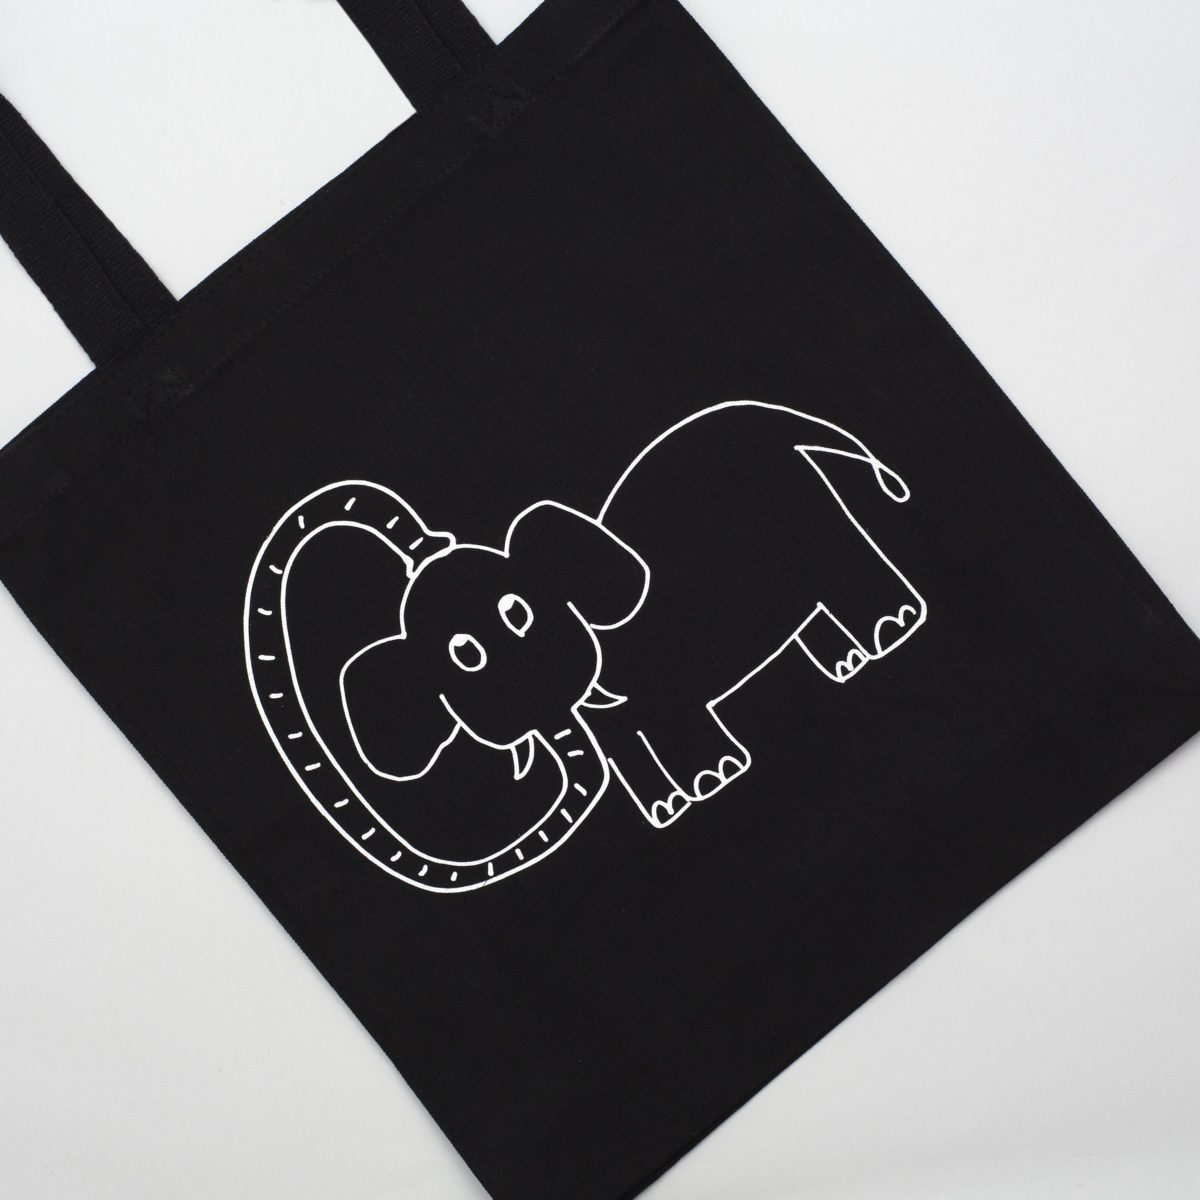 Ken Kagami-designed tote bag for Elephant